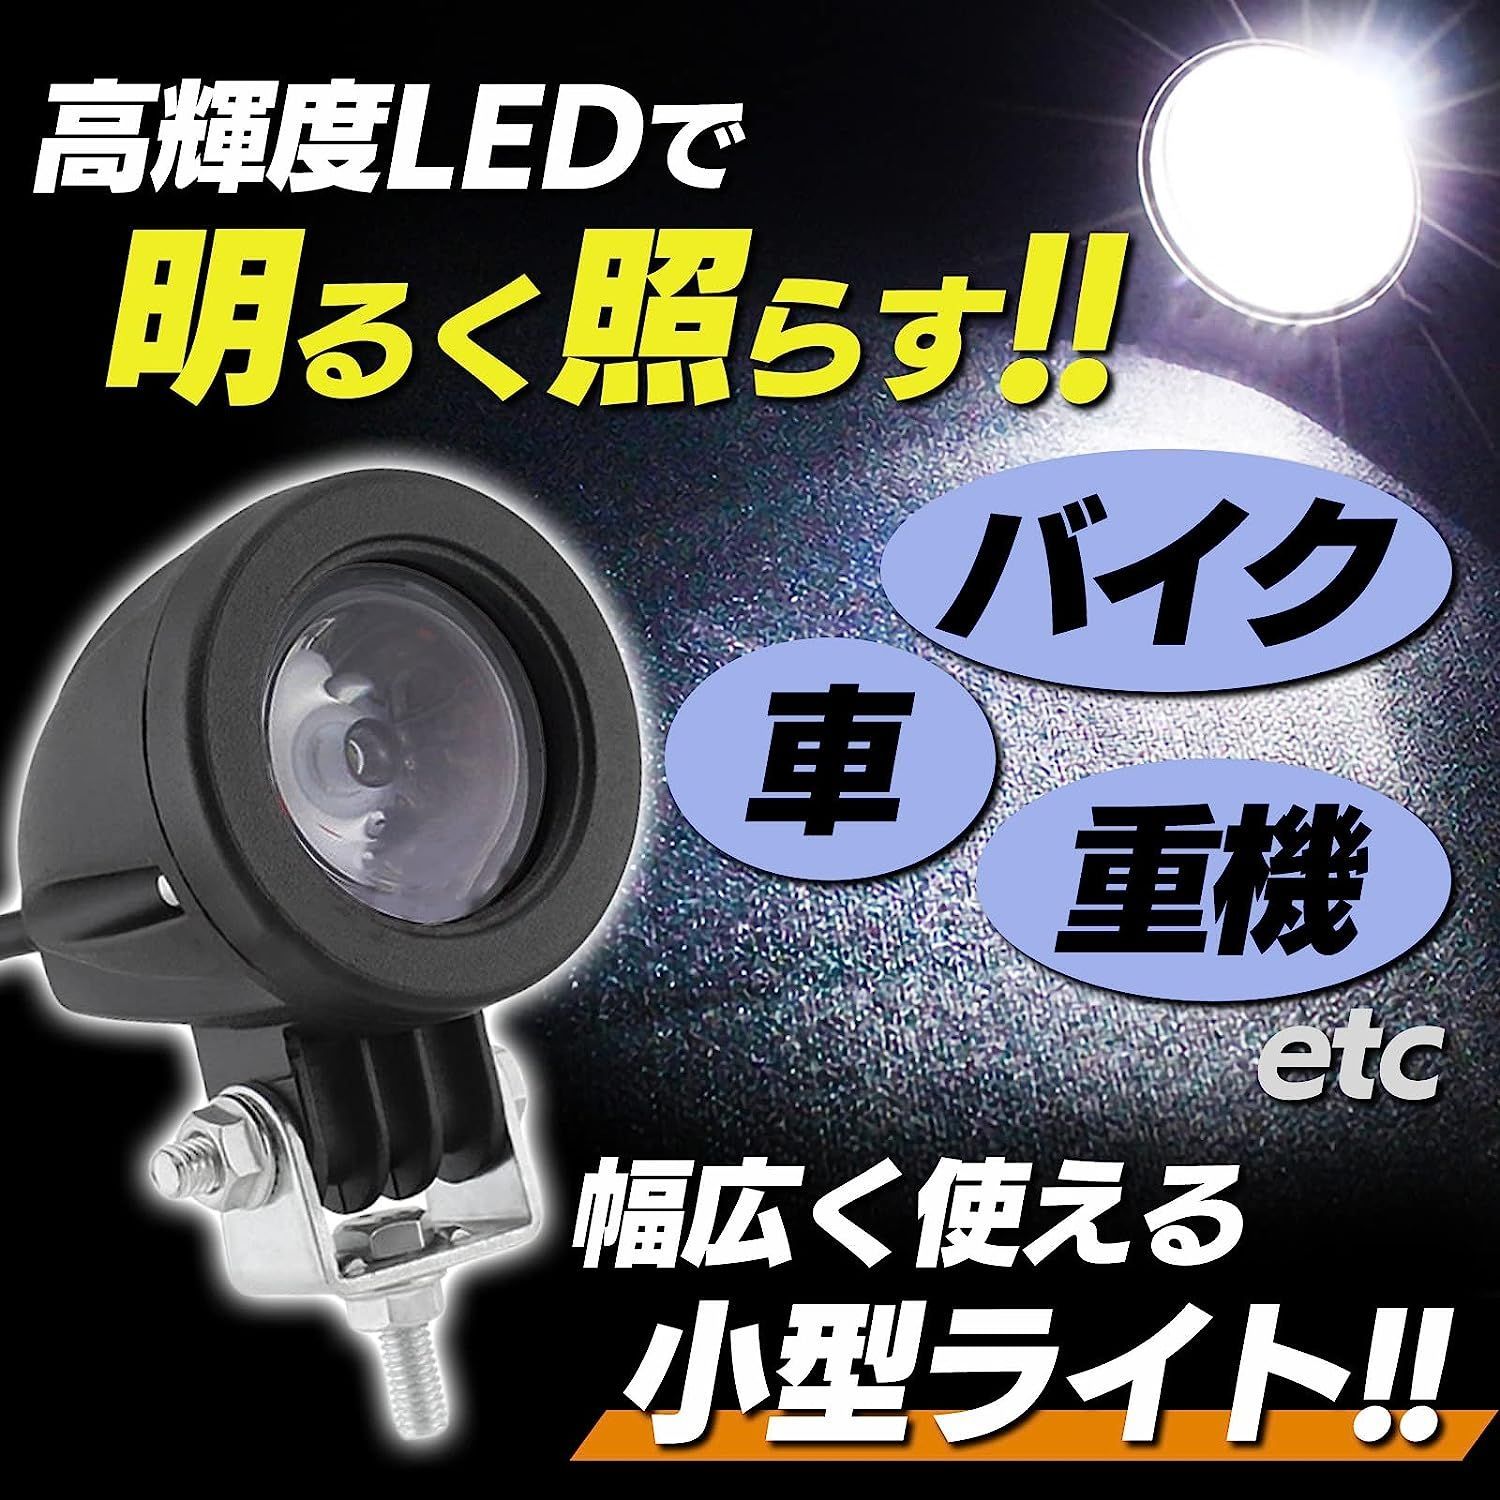 公式の 新品 Meliore 汎用 LED 小型 スポット ライト フォグランプ ワークライト 作業灯 防水 ホワイト 白 1677 4450円  オートバイパーツ